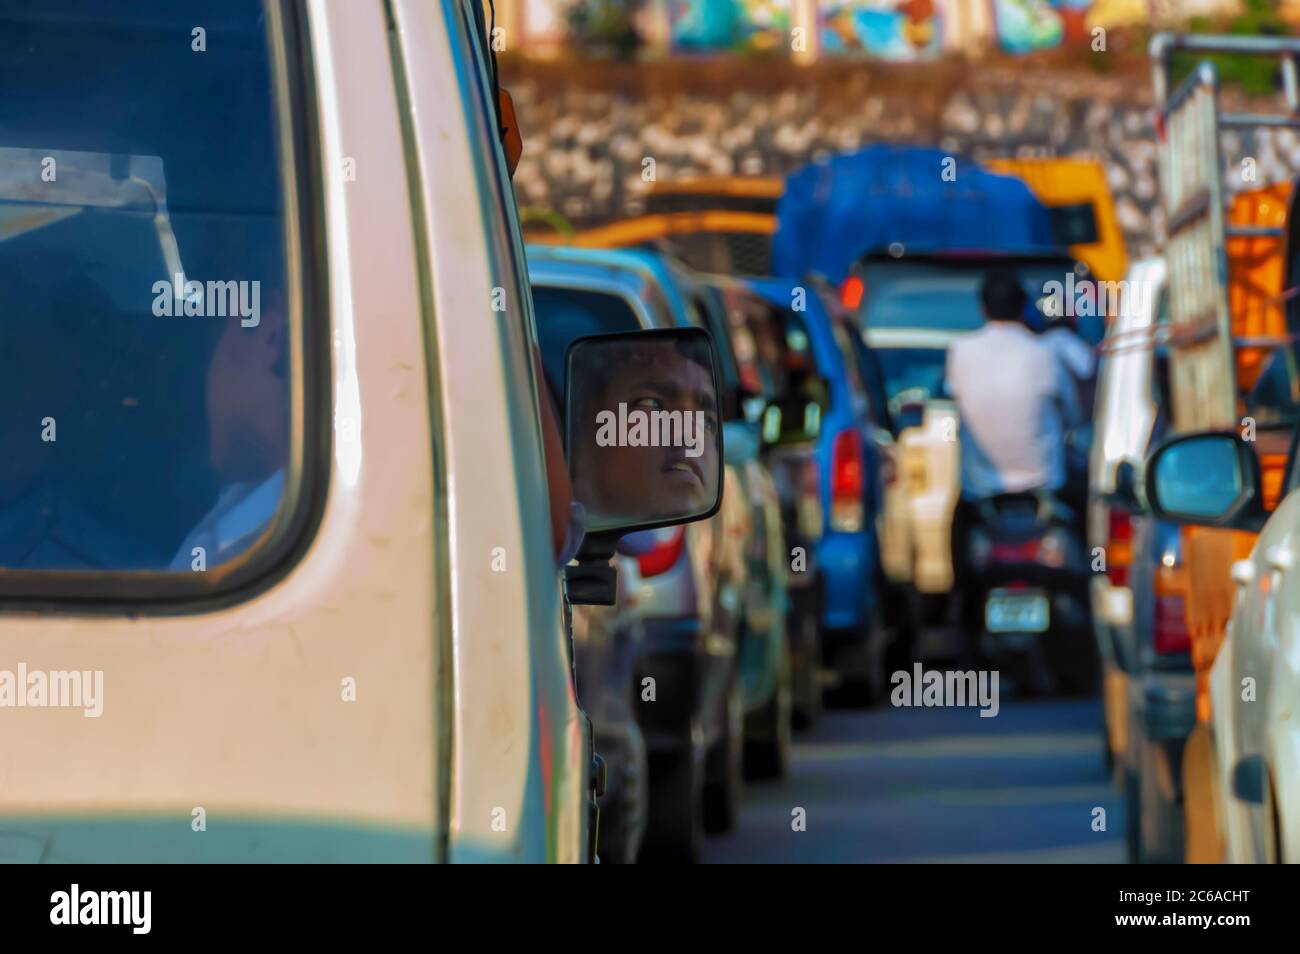 Il riflesso del volto del conducente visibile sullo specchietto retrovisore di un pulmino Maruti. Una lunga fila di veicoli può essere vista intrappolata in un ingorgo stradale. Foto Stock